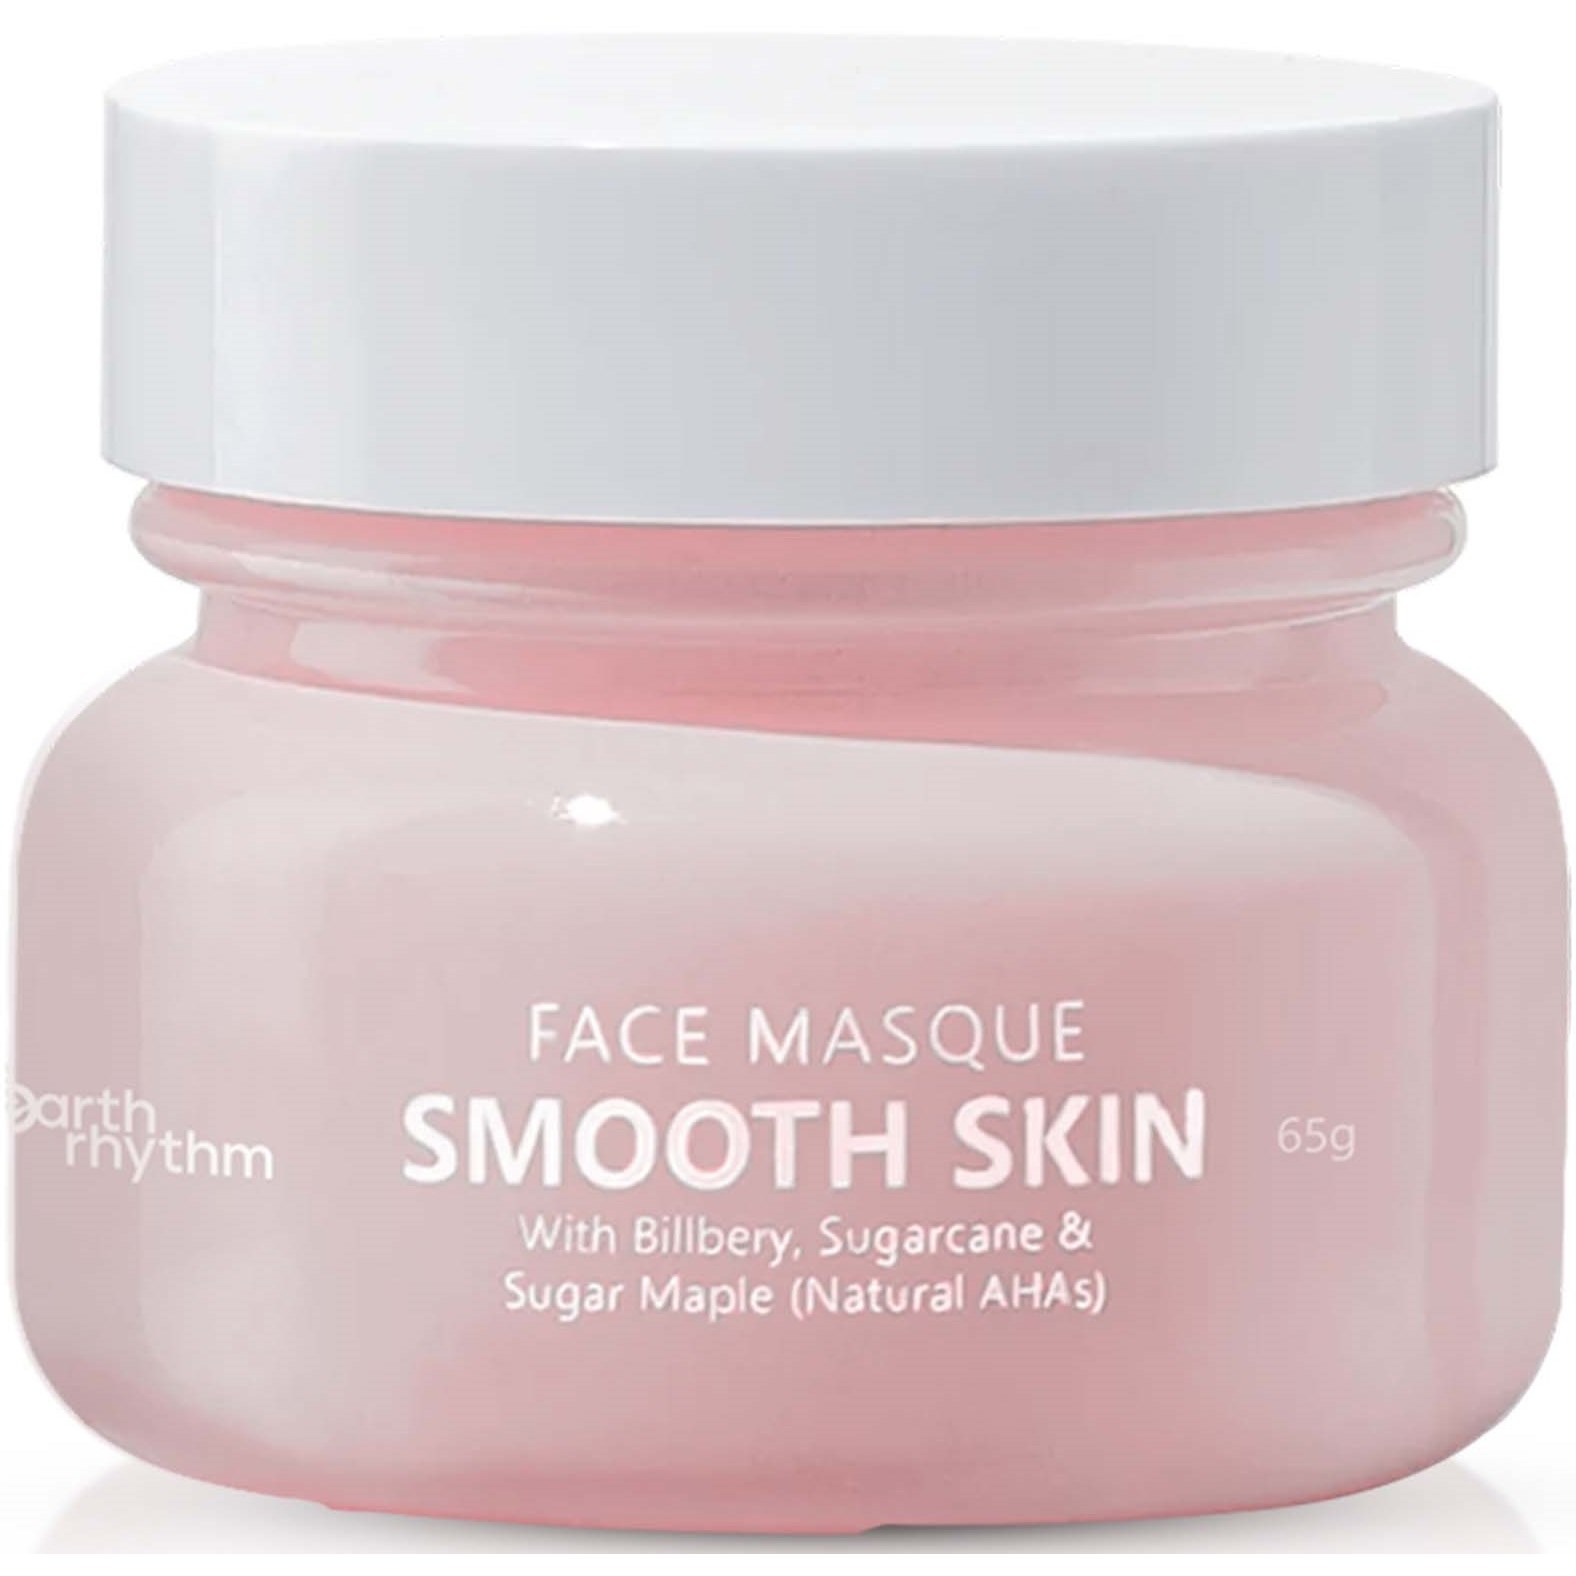 Earth Rhythm Smooth Skin Face Masque With Bilberry Sugarcane & Sugar M